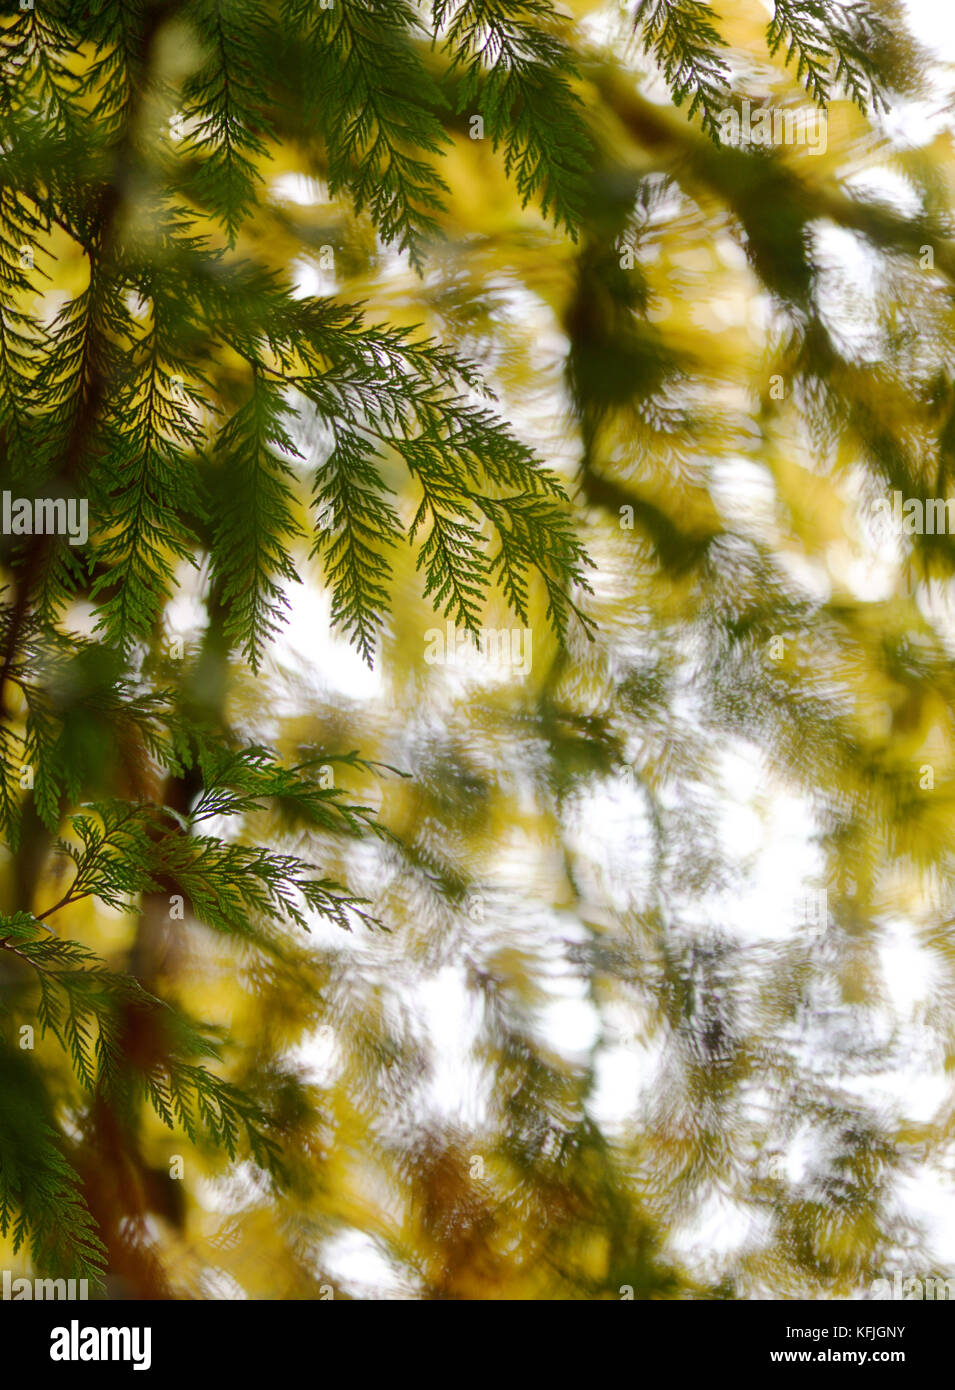 Naturaleza abstracta artística closeup de ramas de cedro y Amarillo otoño las hojas del árbol en el fondo. La isla de Vancouver, British Columbia, Canadá. Foto de stock